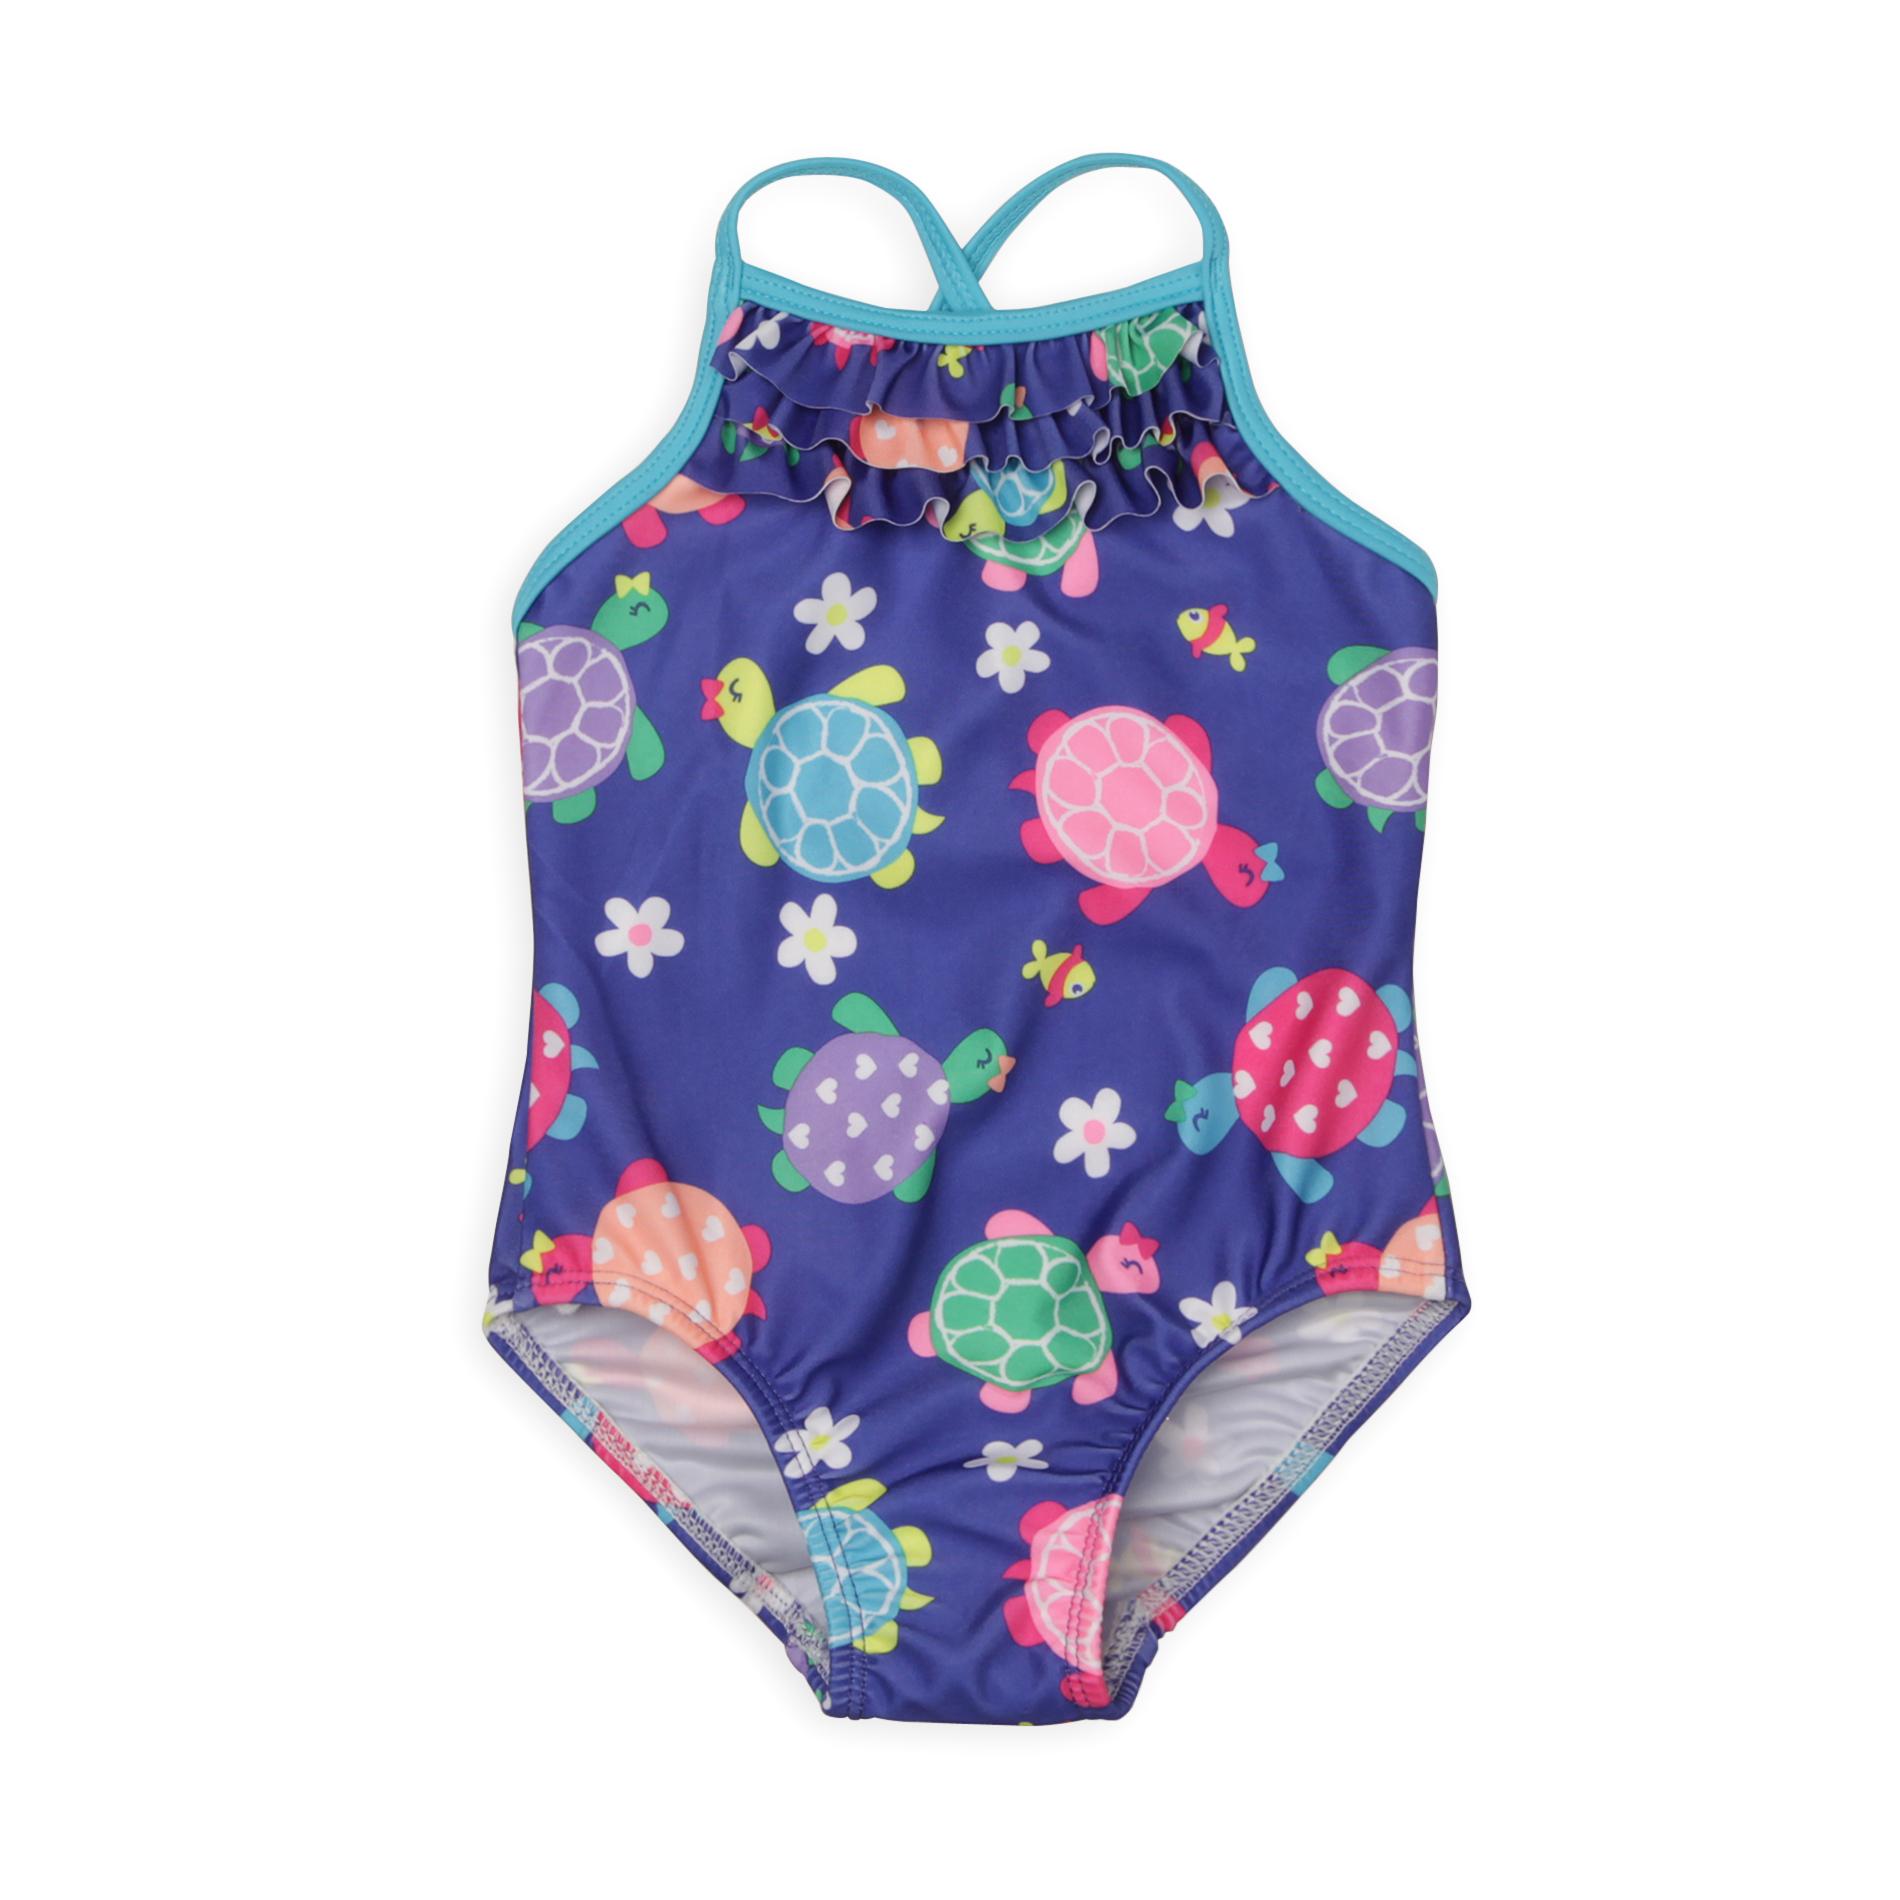 Joe Boxer Infant & Toddler Girl's Ruffled Bib Swimsuit - Turtles